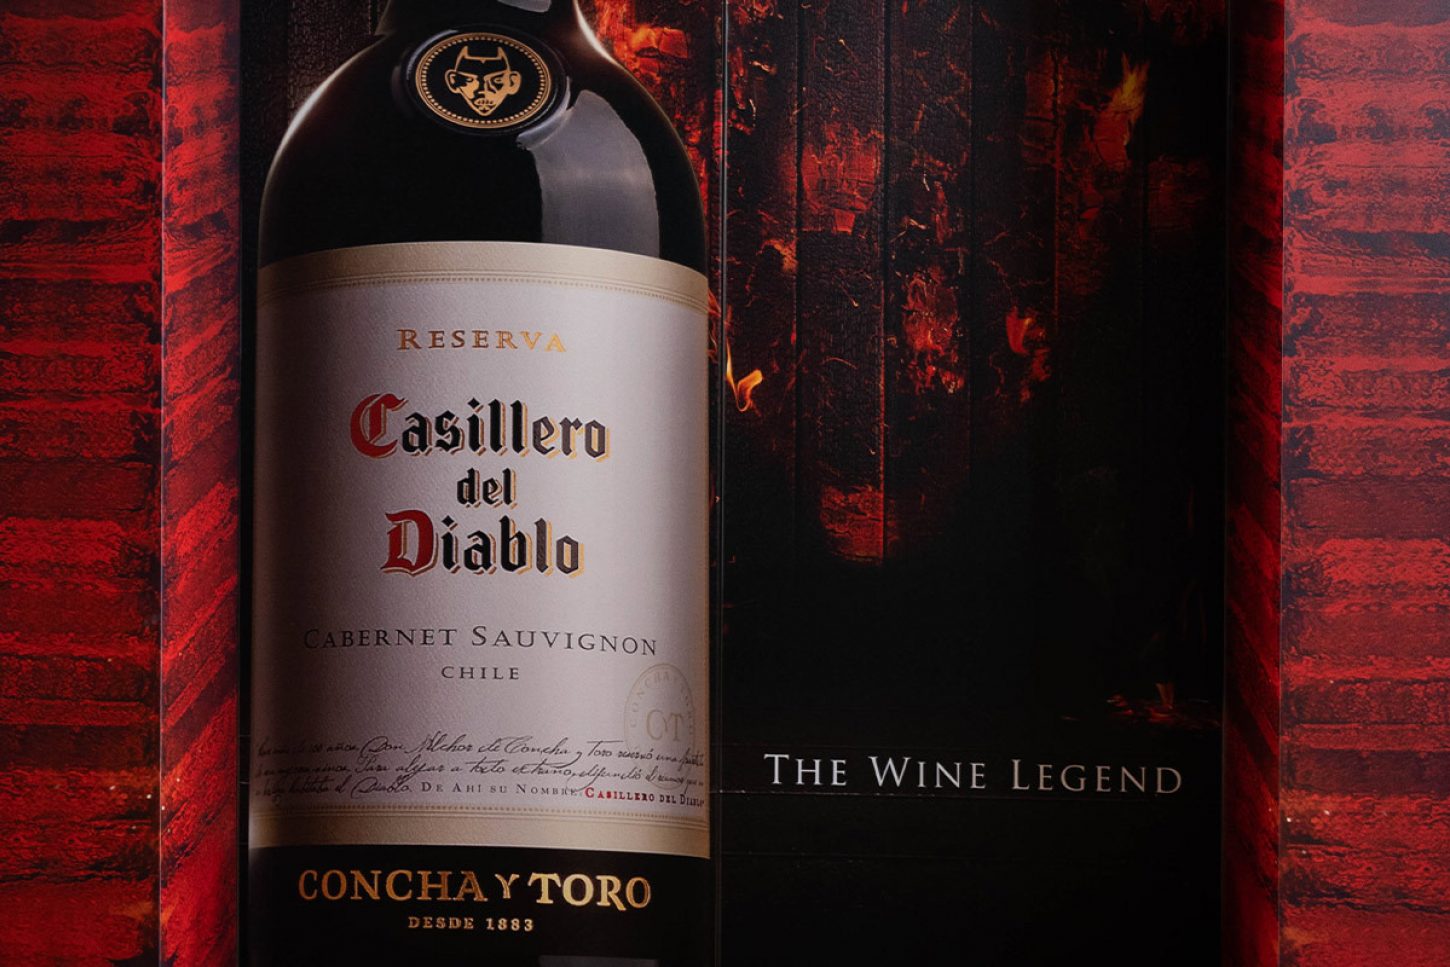 Casillero del Diablo je priznana kot druga najmočnejša blagovna znamka vina na svetu